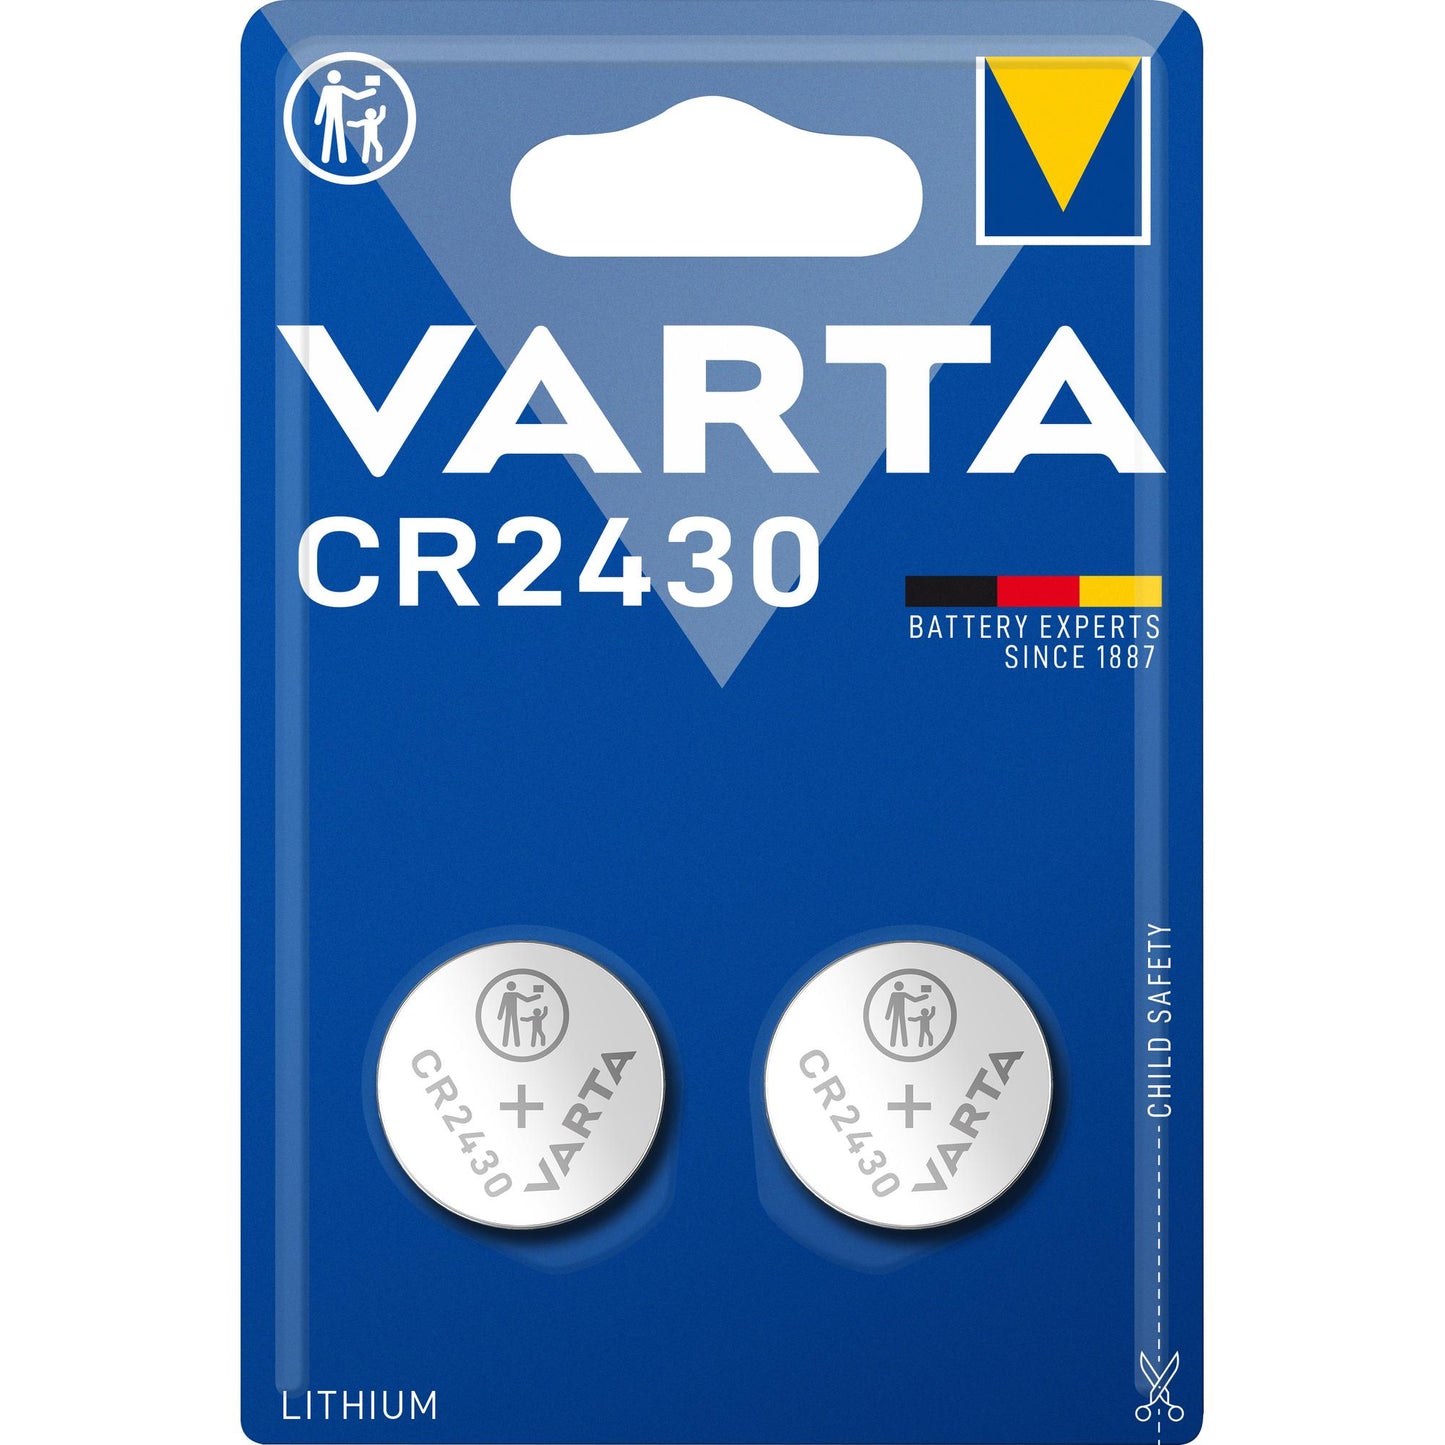 VARTA Batterie Lithium Knopfzelle CR2430, 3V Electronics, Retail Blister (2-Pack)